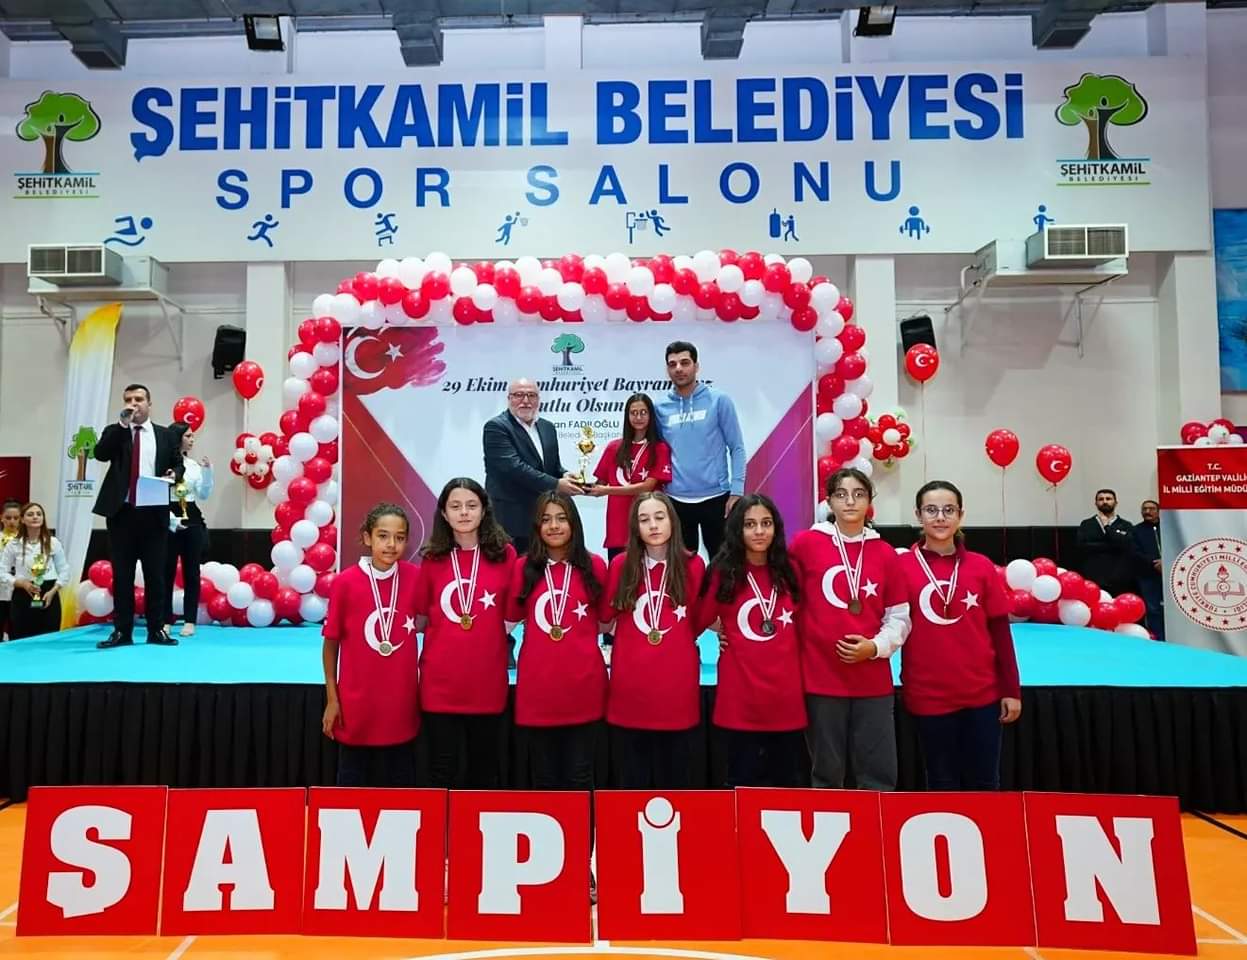 Şehitkamil Belediyesi 29 Ekim Cumhuriyet Bayramı Geleneksel Spor Etkinlikleri Ödül Töreni